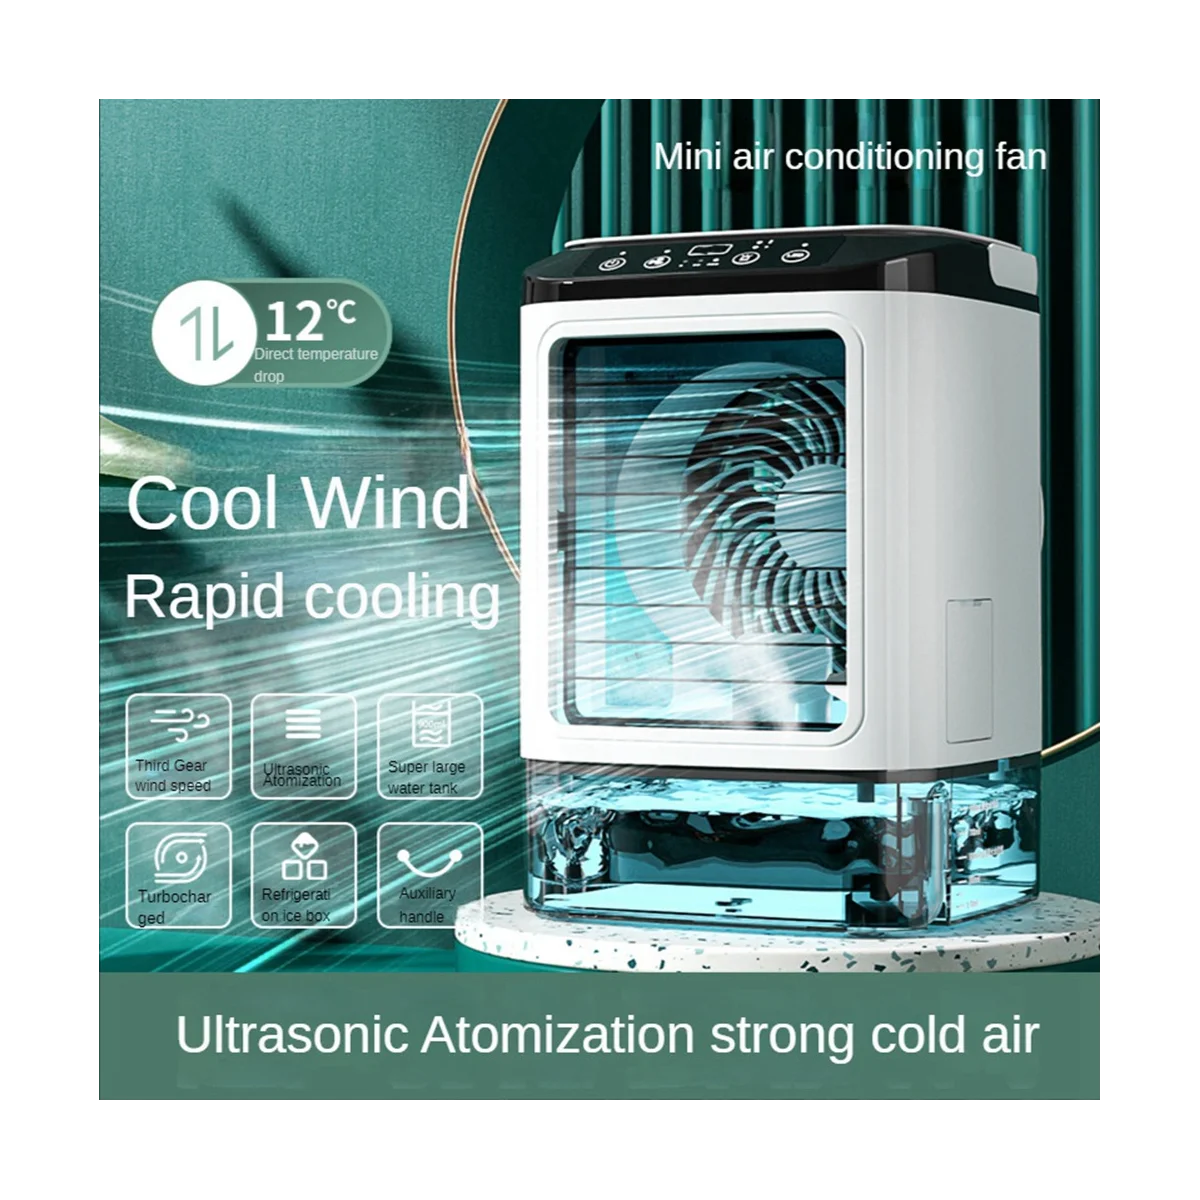 

Вентилятор холодный с распылителем для дома, настольный мини-вентилятор с питанием от USB для охлаждения, небольшой портативный, для влажной и влажной воды, с распылителем